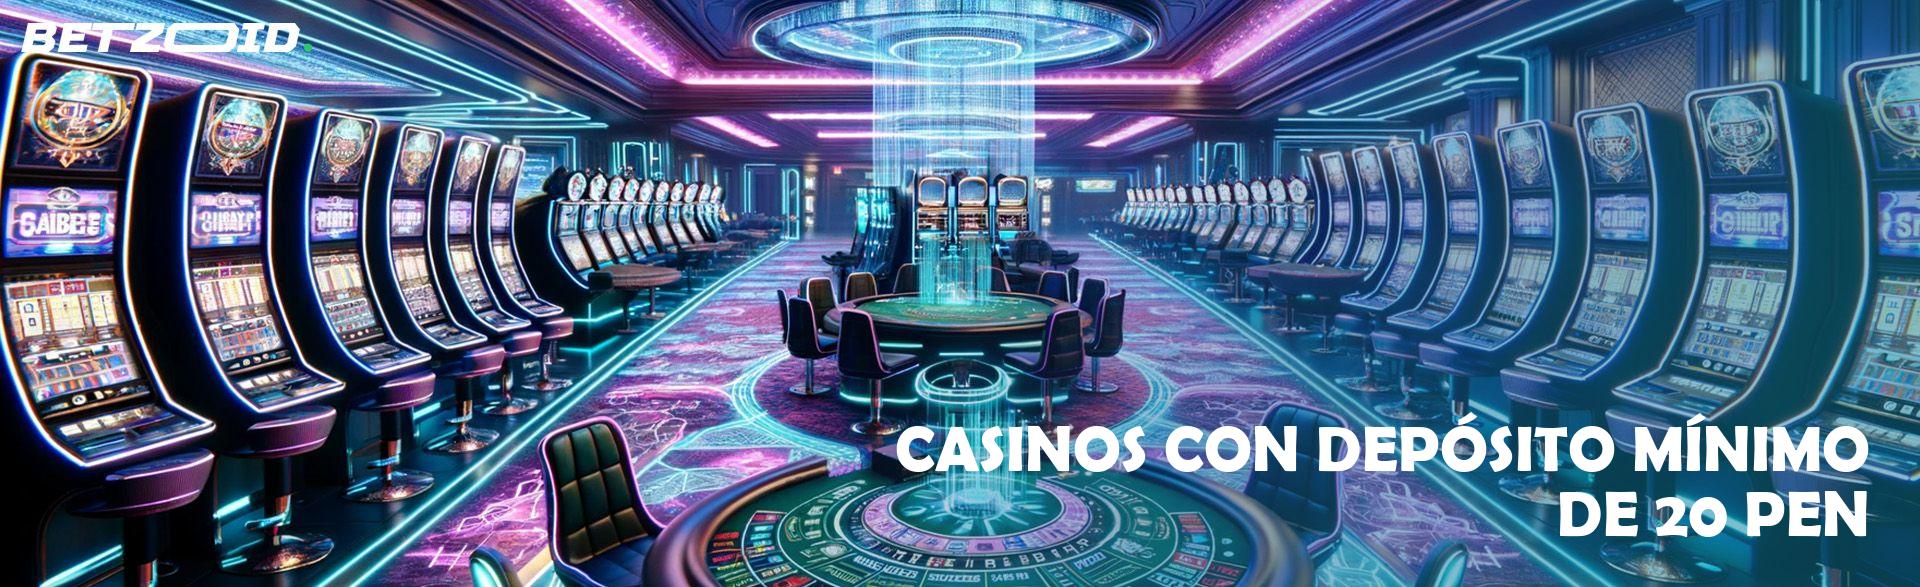 Casinos con Depósito Mínimo de 20 PEN.